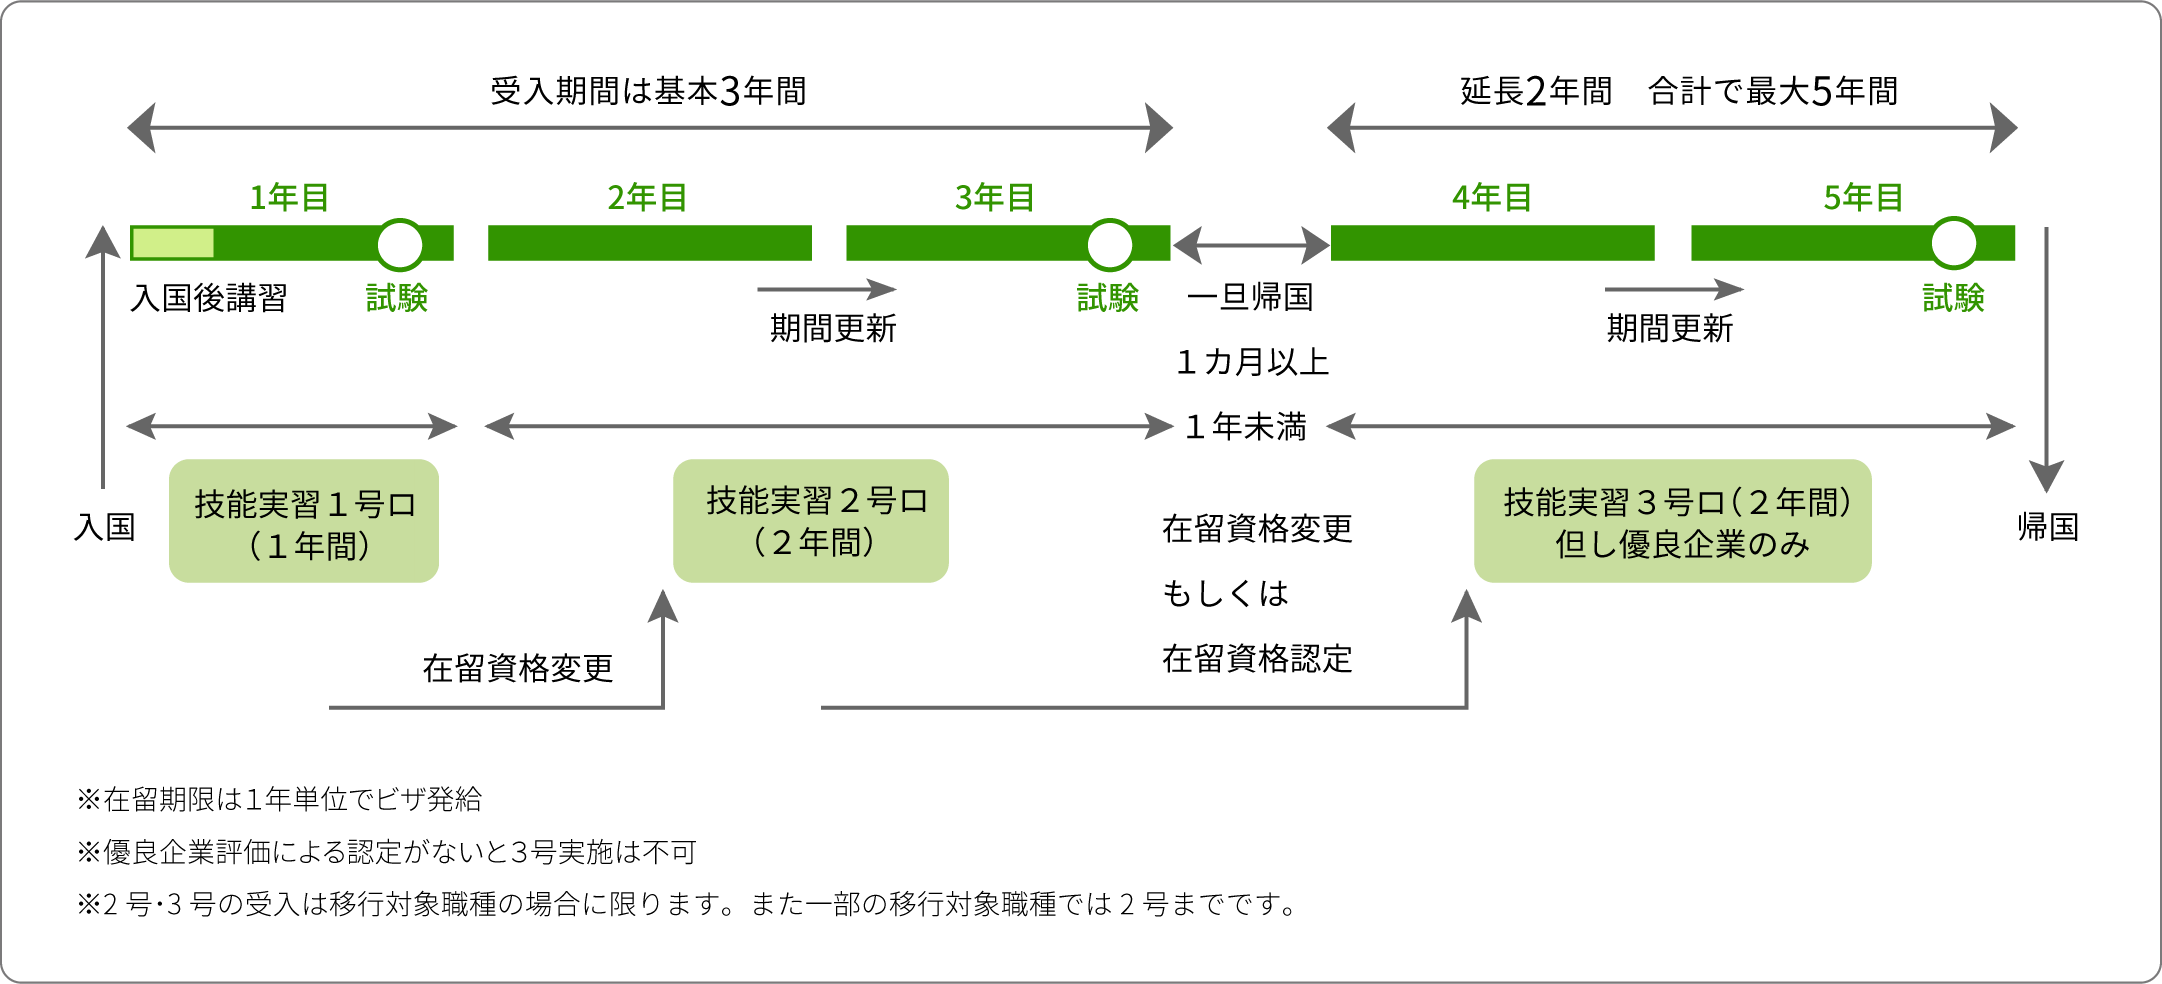 日本高级蓝领工人，未来外国人将占主导(图2)